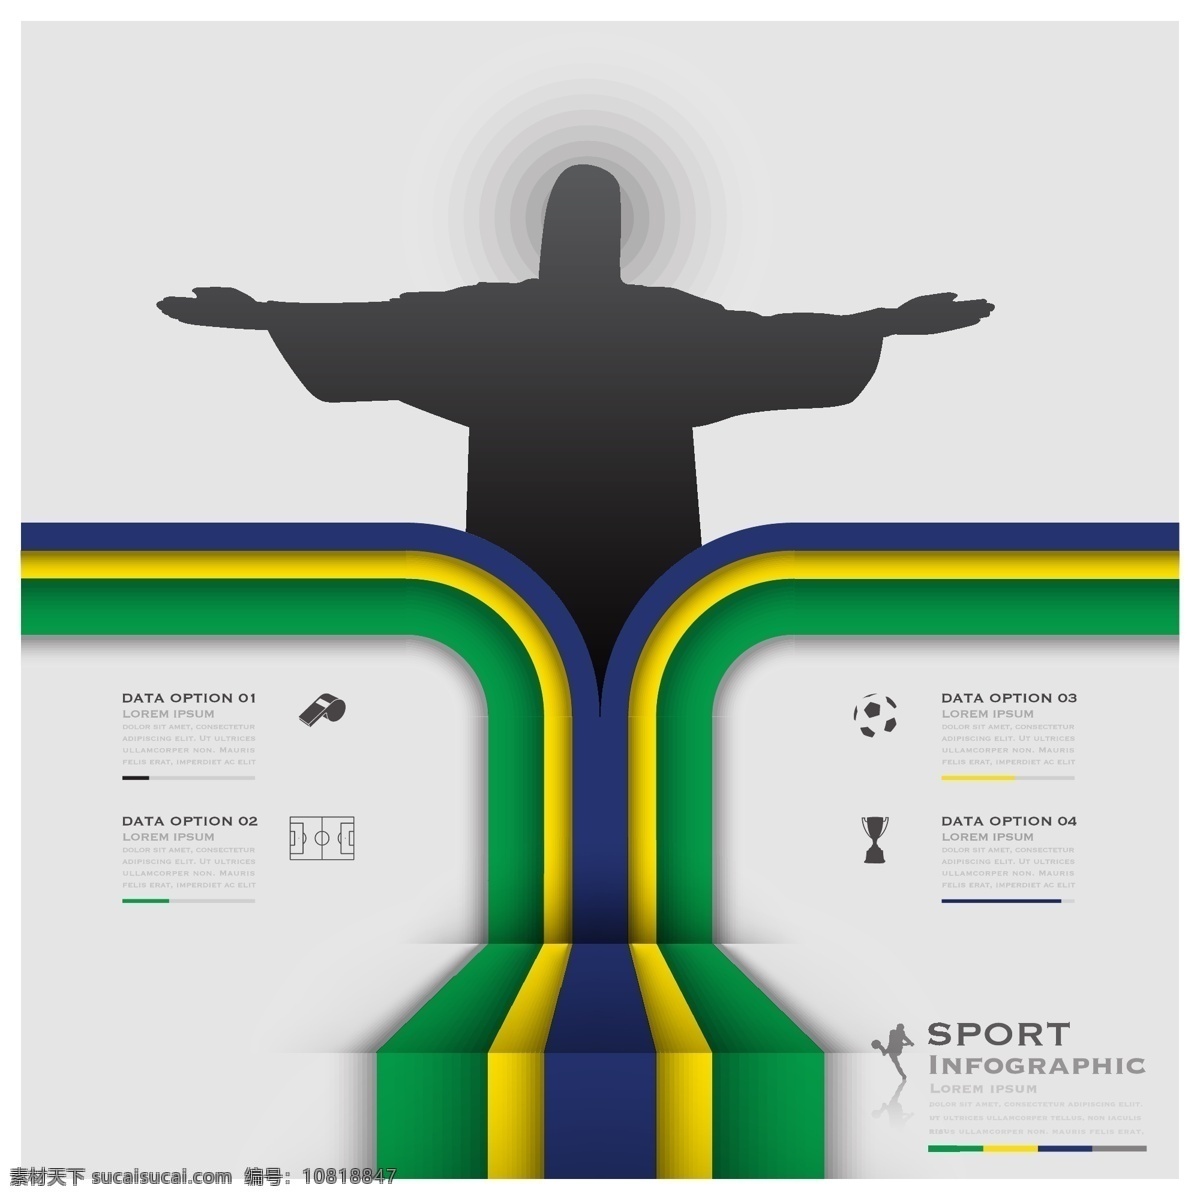 巴西基督像 巴西 基督 模板下载 基督像 足球赛事 足球比赛 世界杯素材 体育运动 生活百科 矢量素材 白色